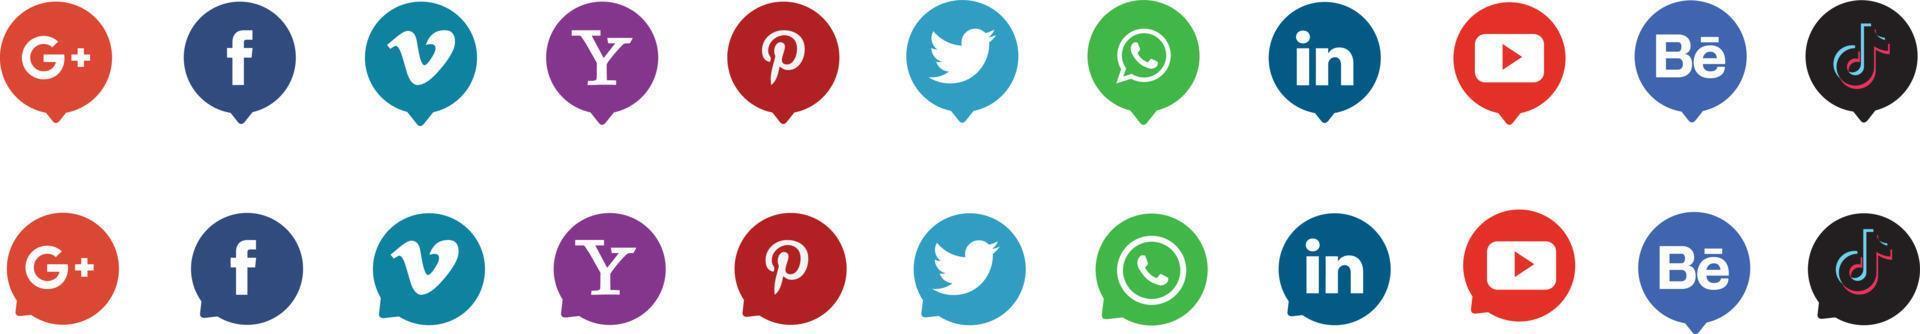 colección de logotipos de redes sociales populares. conjunto editorial realista. vector